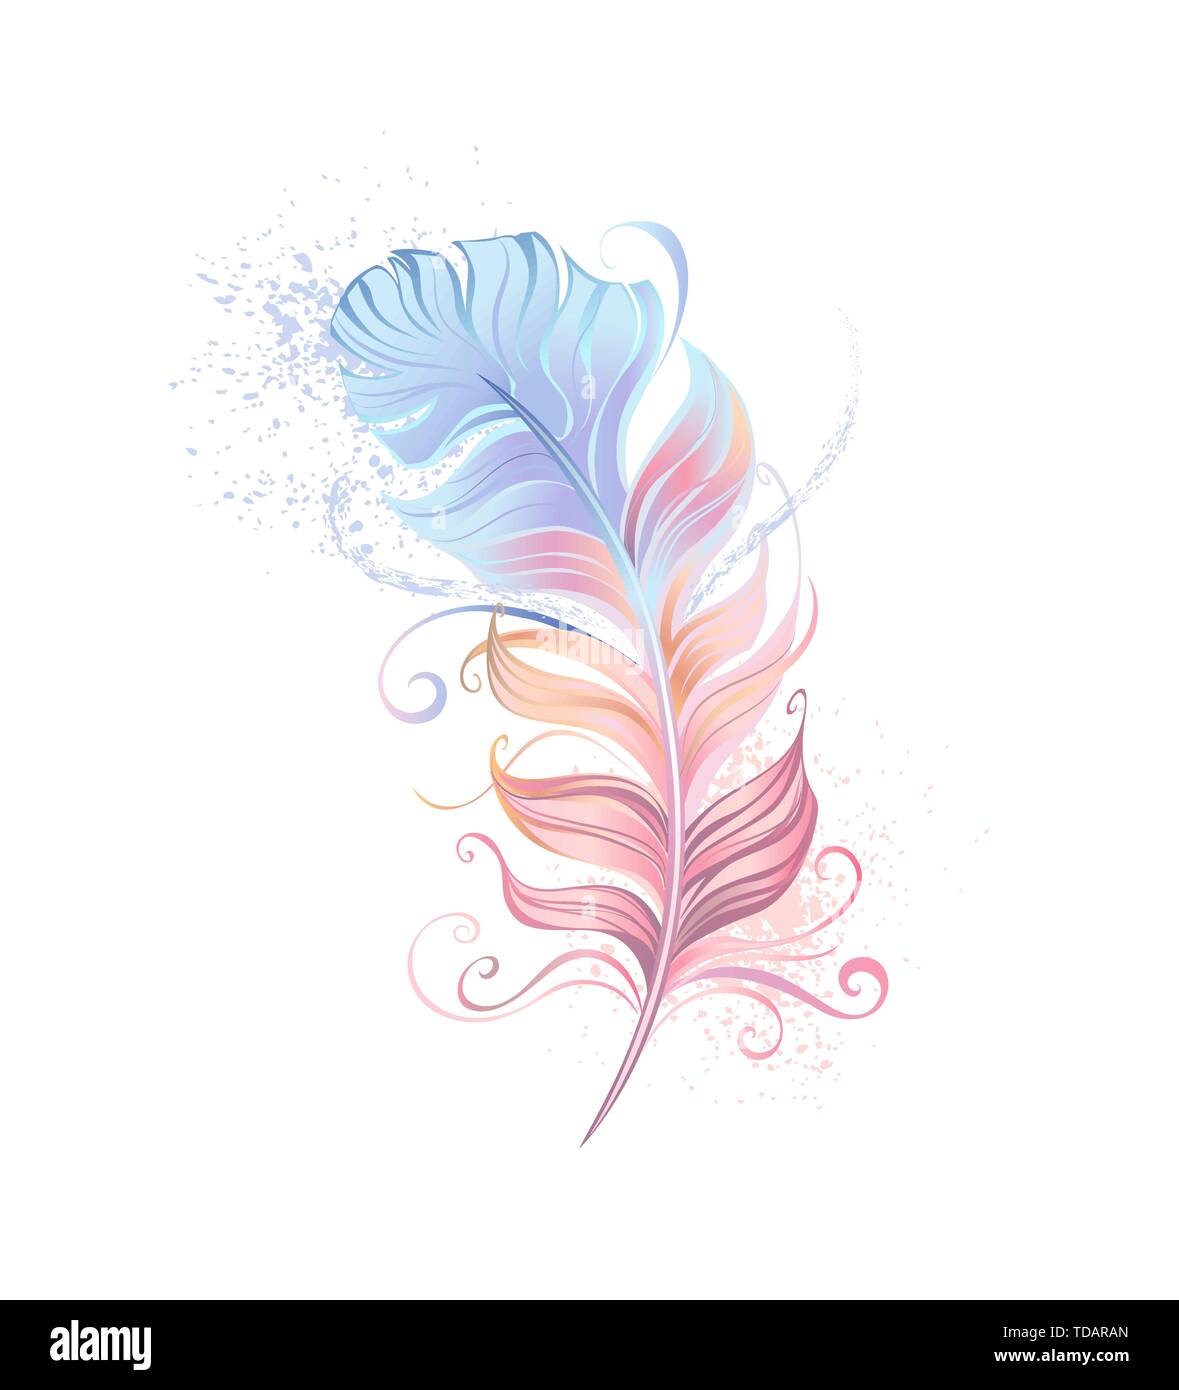 Schöne Feder in Rosa und Blau pastell Farben auf weißem Hintergrund gemalt. Stock Vektor